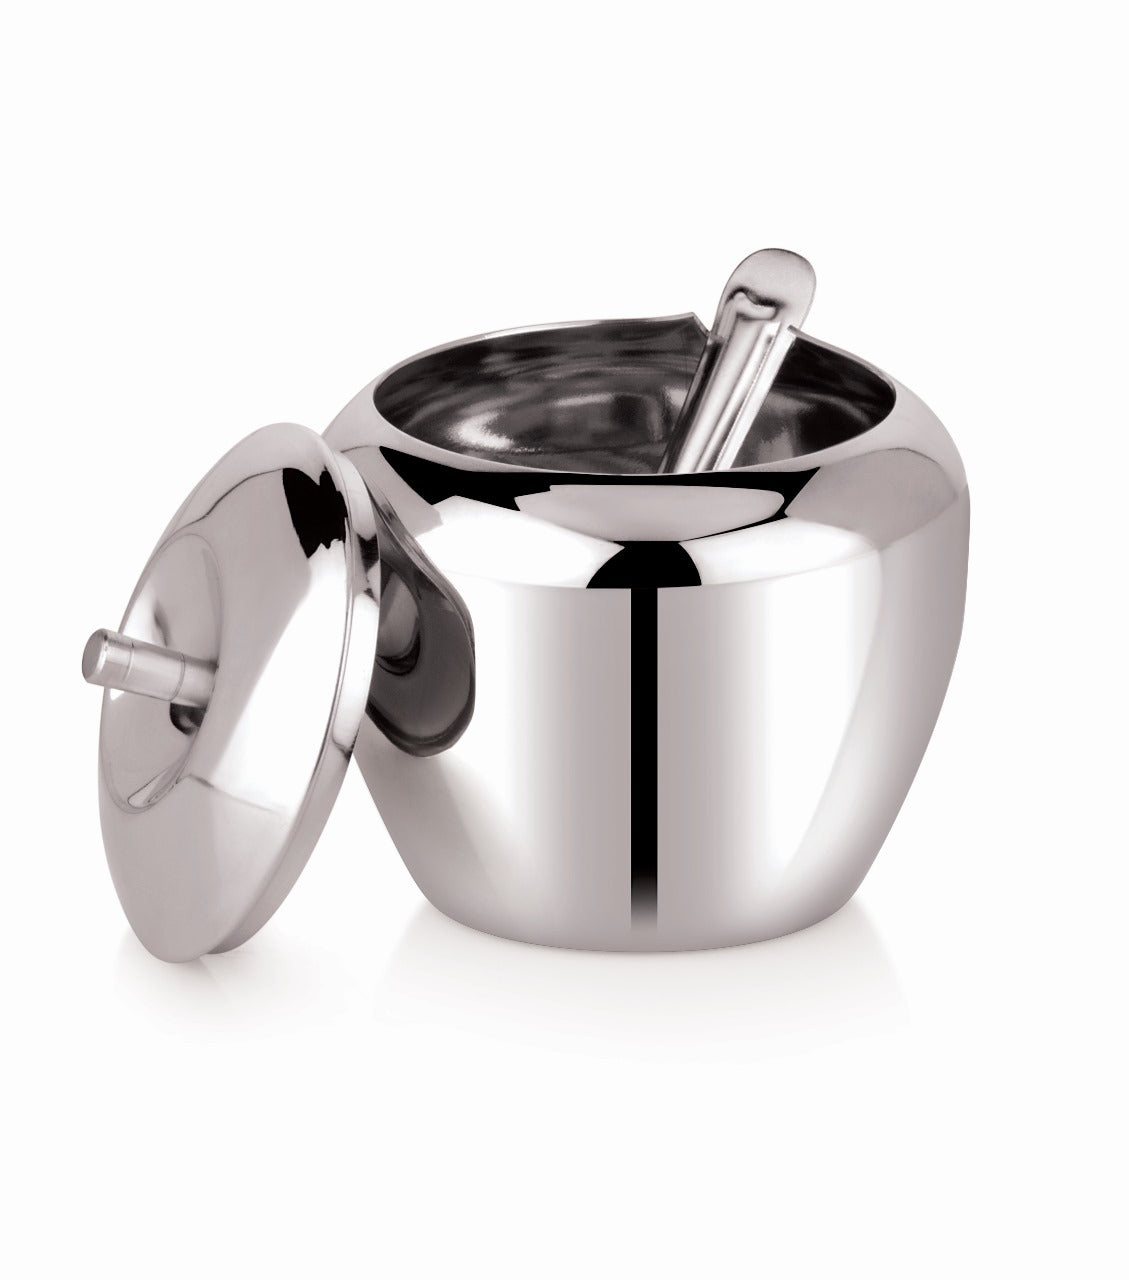 NATULIX Stainless Steel Apple Design Ghee Pot - 400ml